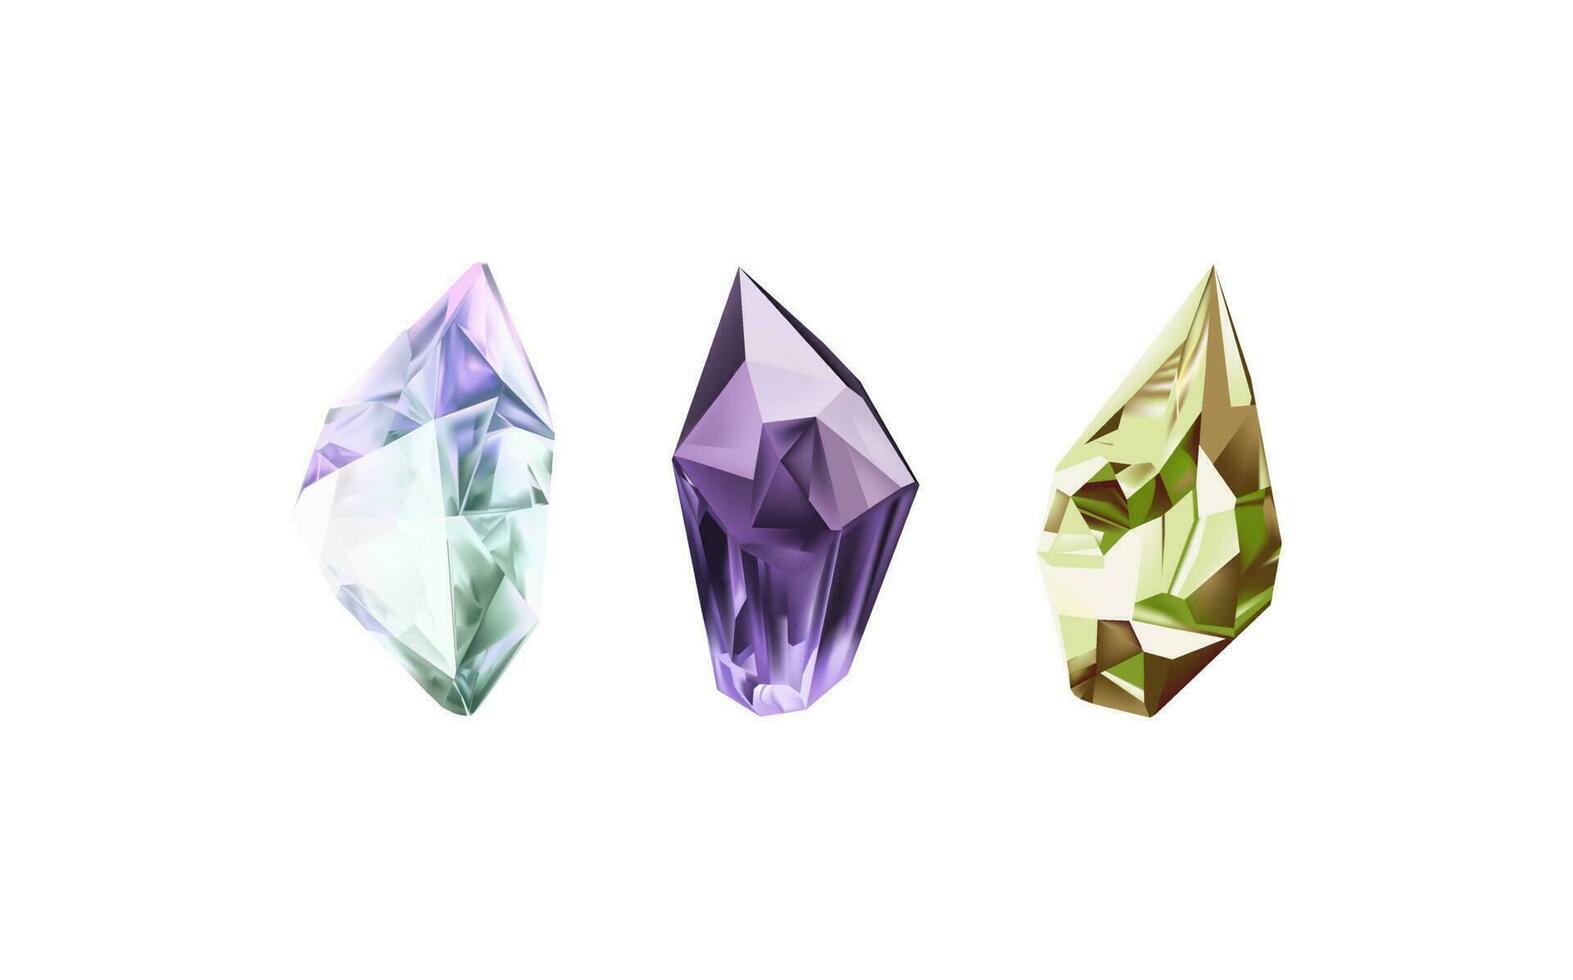 ein Sammlung von Bilder von Diamanten von verschiedene geometrisch Formen, Farben und Größen.Glas glänzend Kristalle mit anders Schatten reflektieren licht.vektor realistisch einstellen von glühen Edelstein oder bunt Eis. vektor